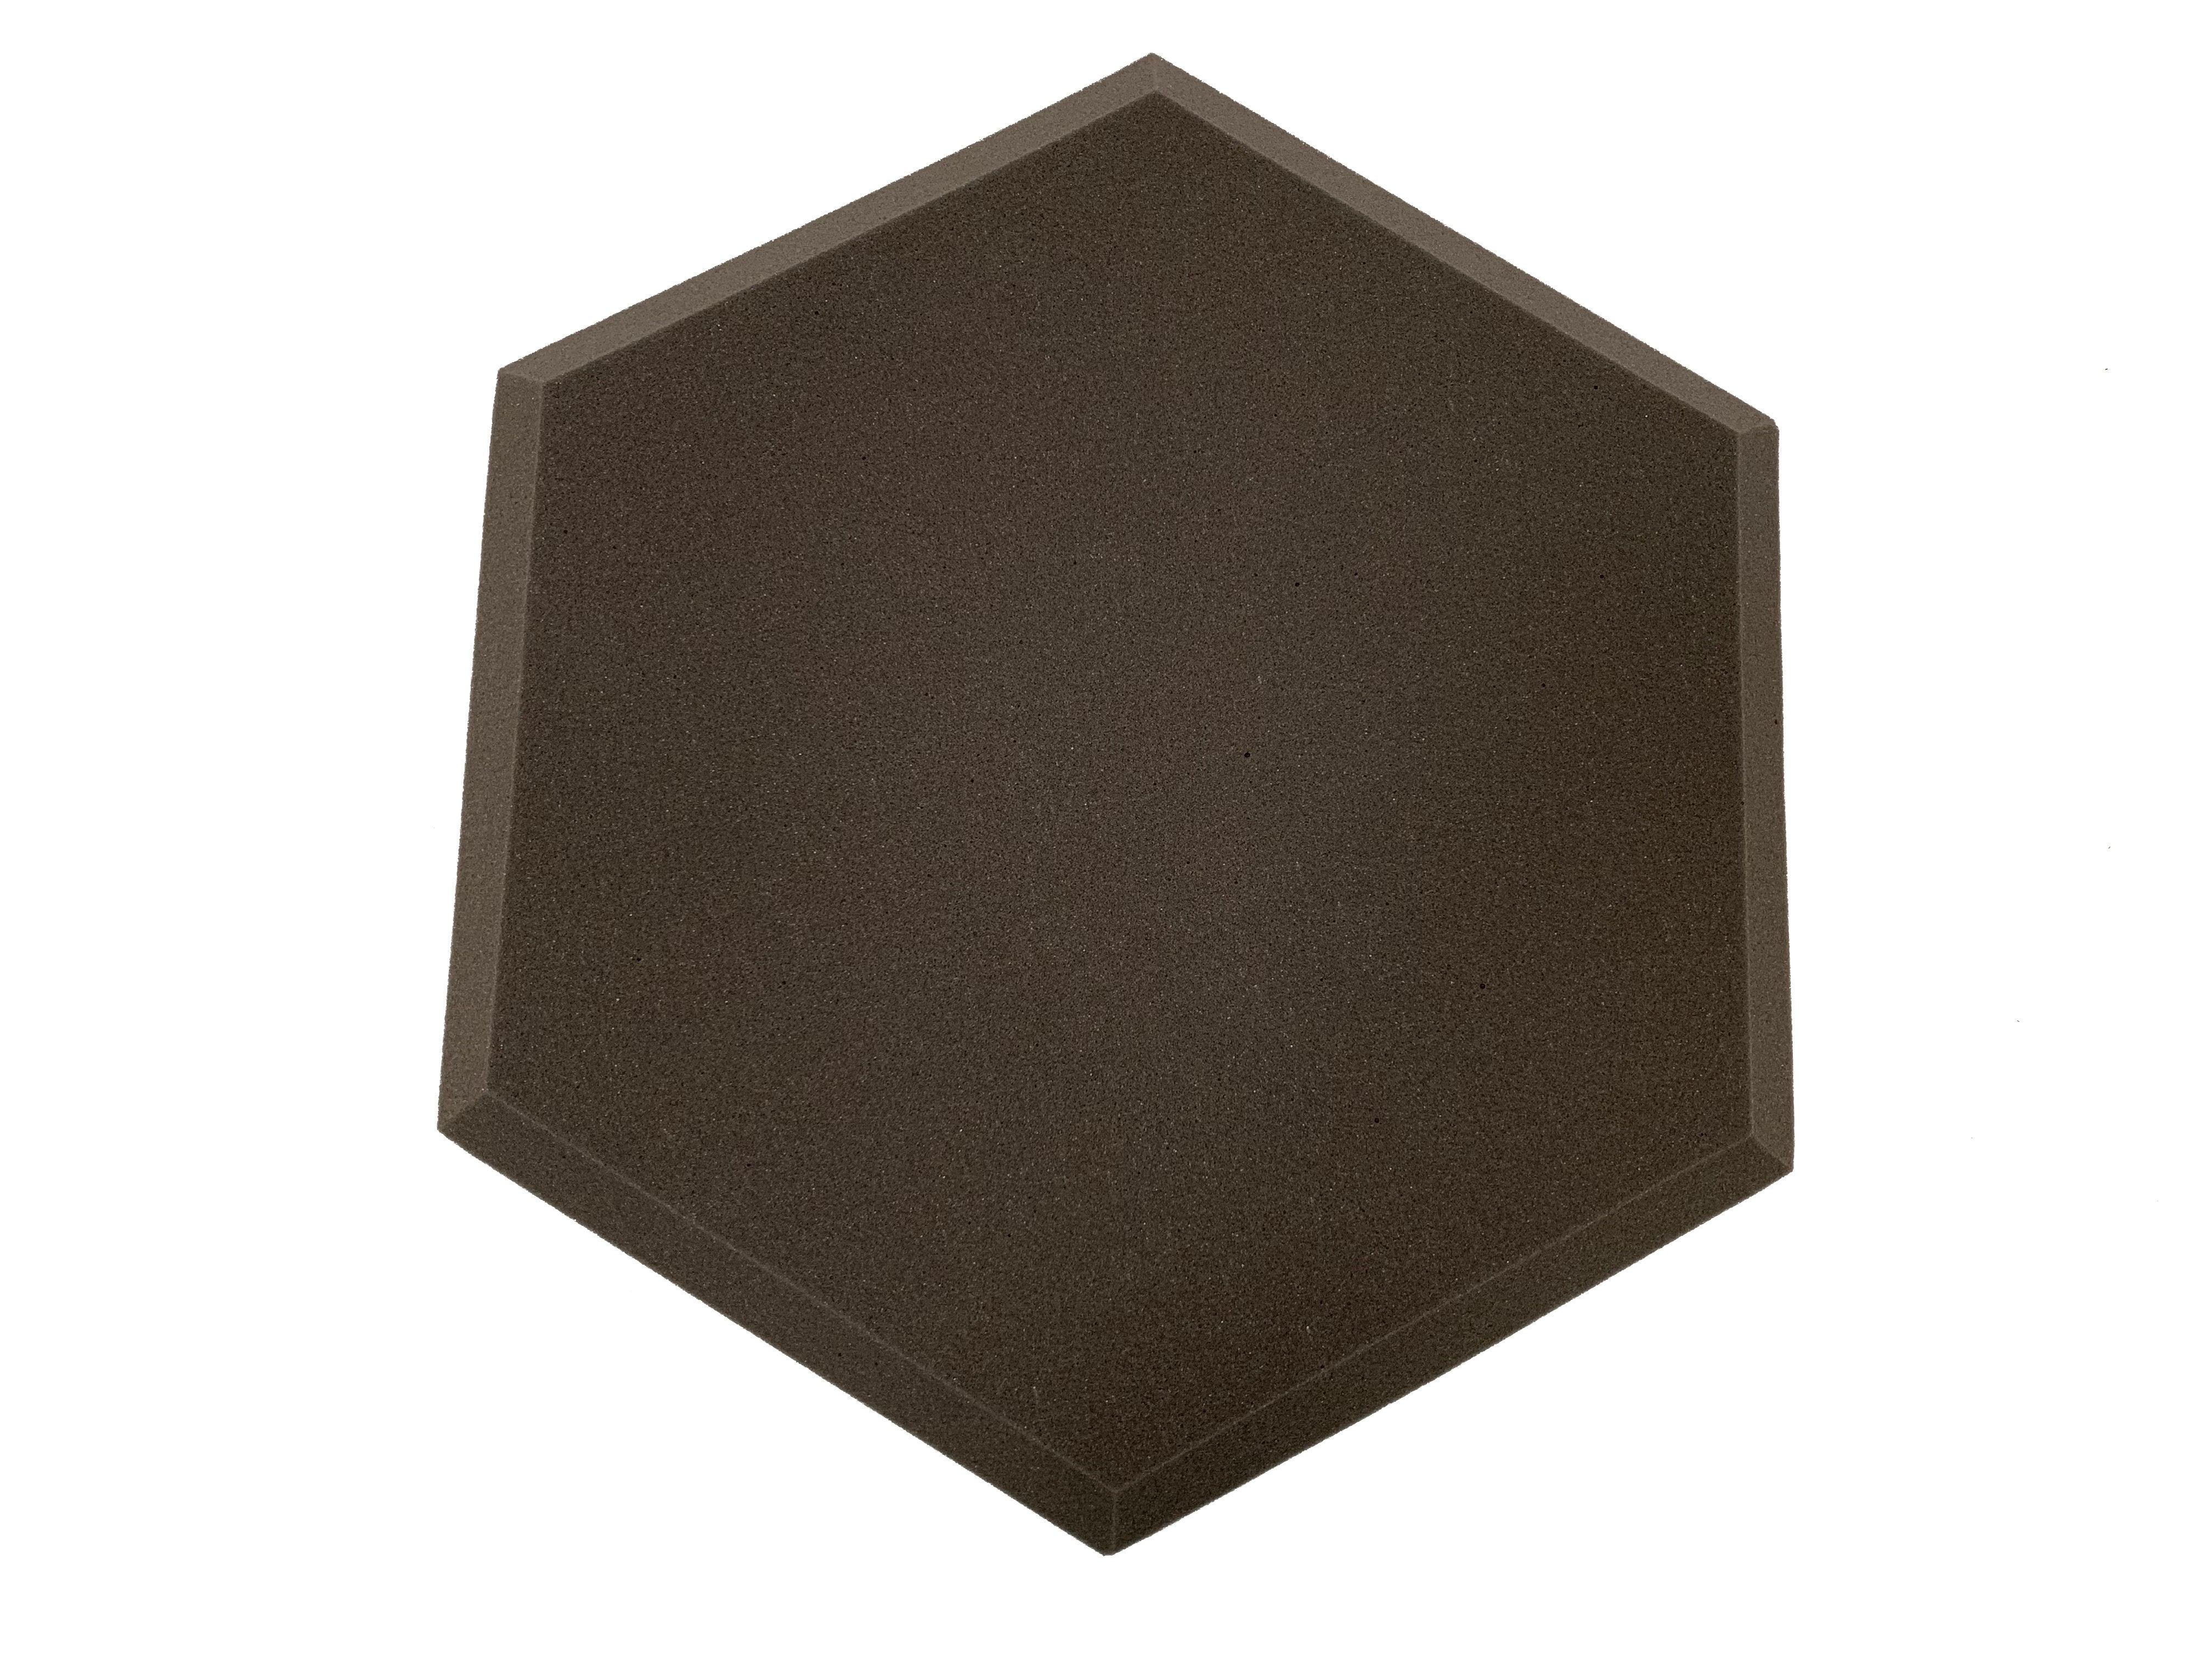 Hexatile2 Acoustic Studio Foam Tile Pack - Advanced Acoustics